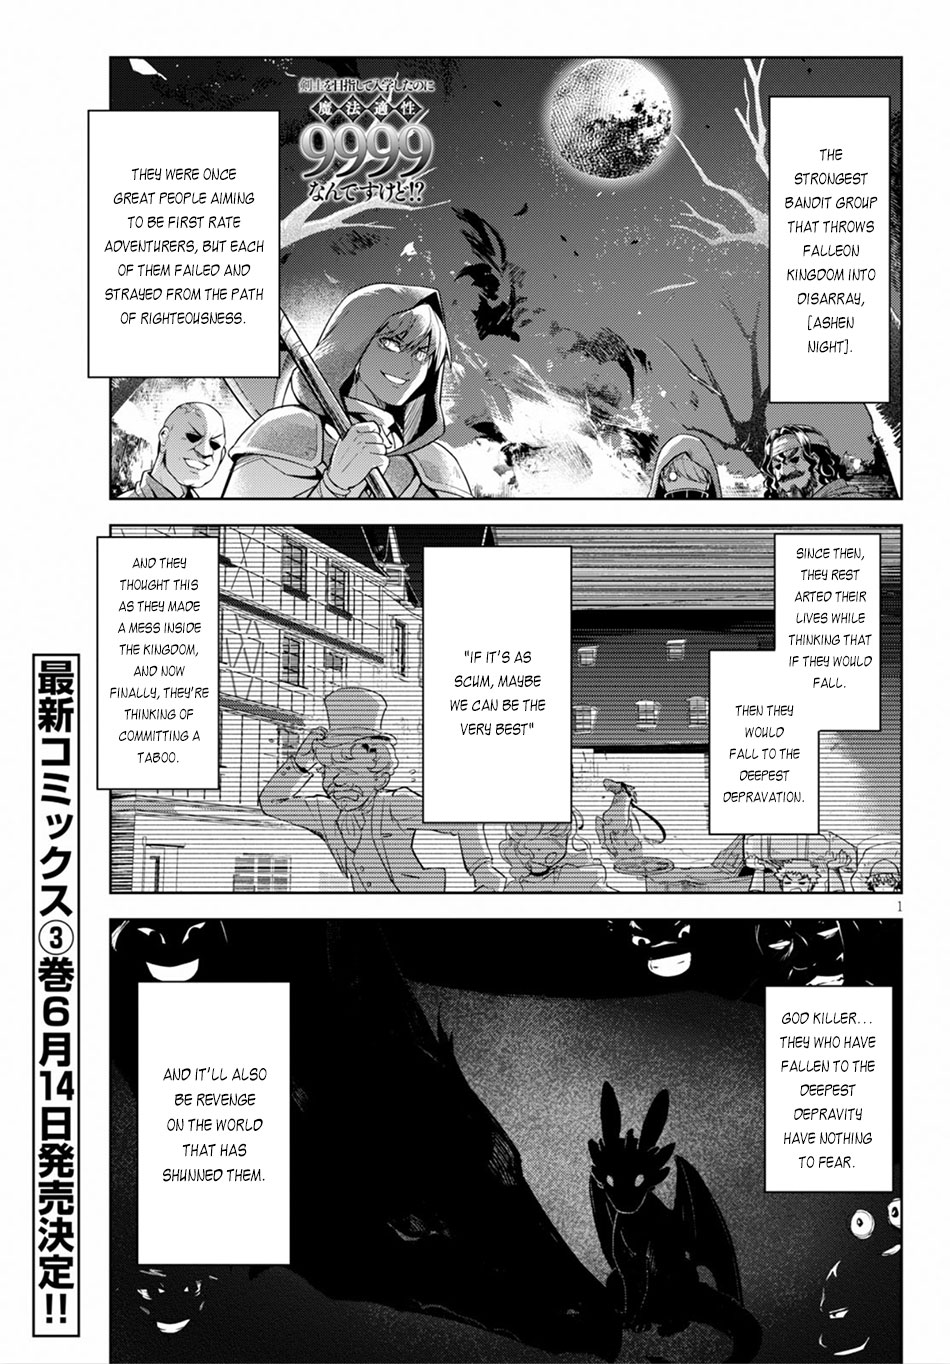 Kenshi O Mezashite Nyugaku Shitanoni Maho Tekisei 9999 Nandesukedo!? Vol.4 Chapter 18: The Villains Have Come Attacking - Picture 2